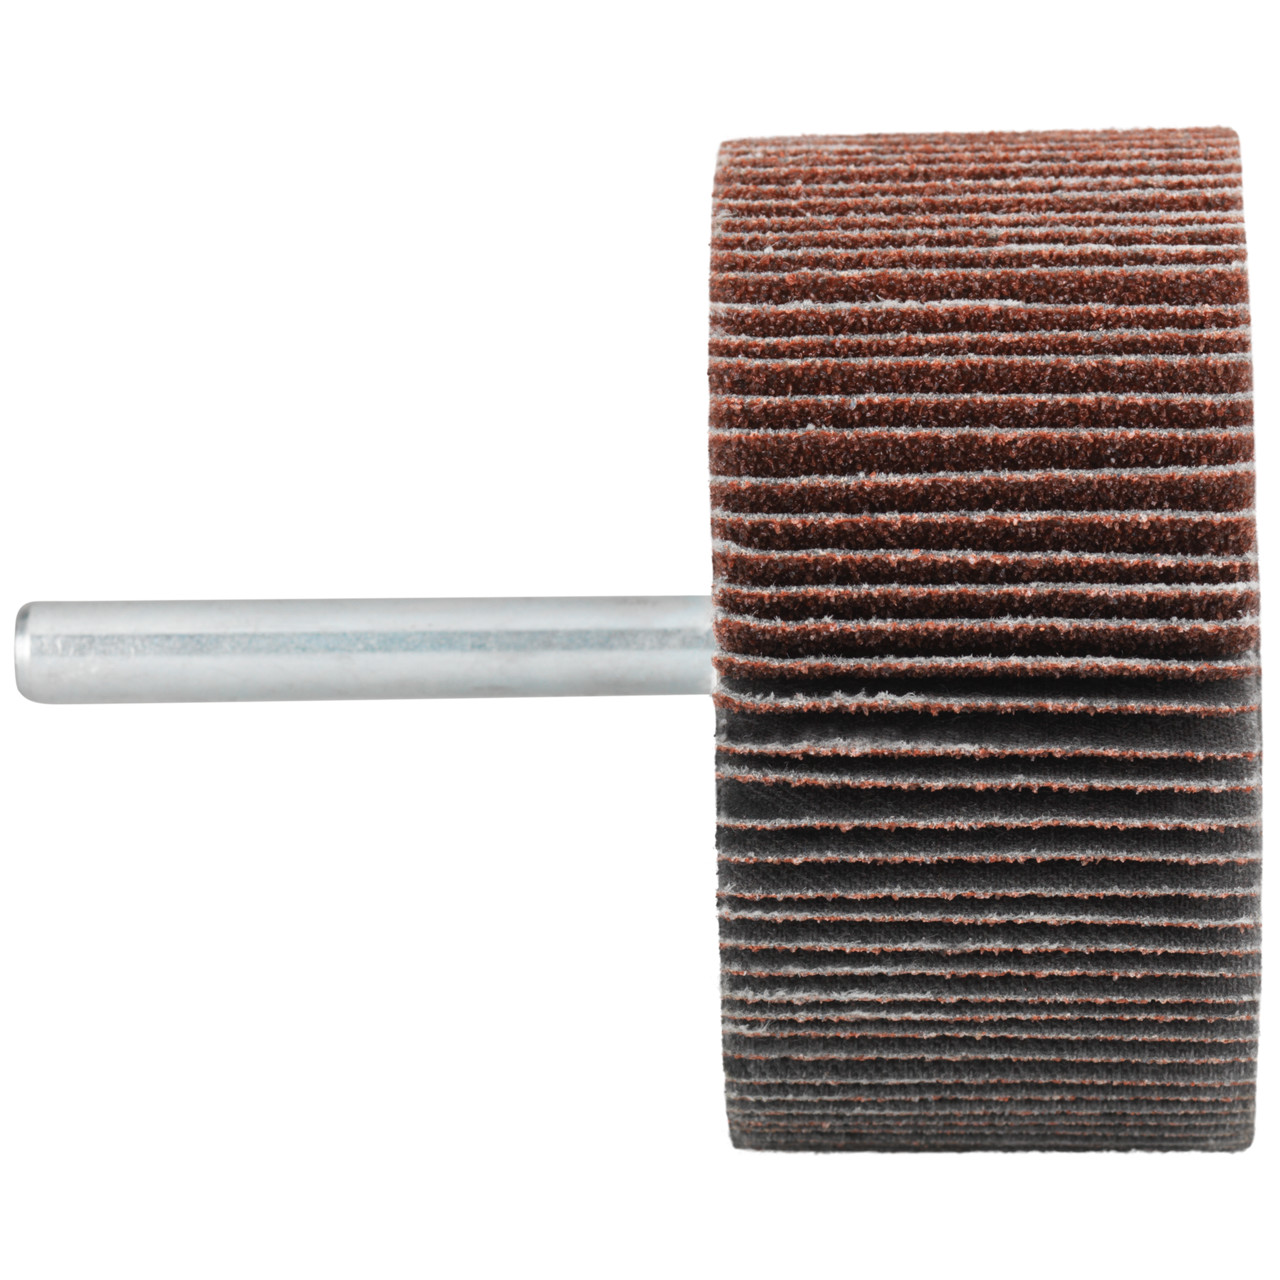 Tyrolit A-P01 C X Pennen DxD 80x50 Voor staal, roestvast staal en non-ferrometalen, P150, vorm: 52LA, Art. 816993